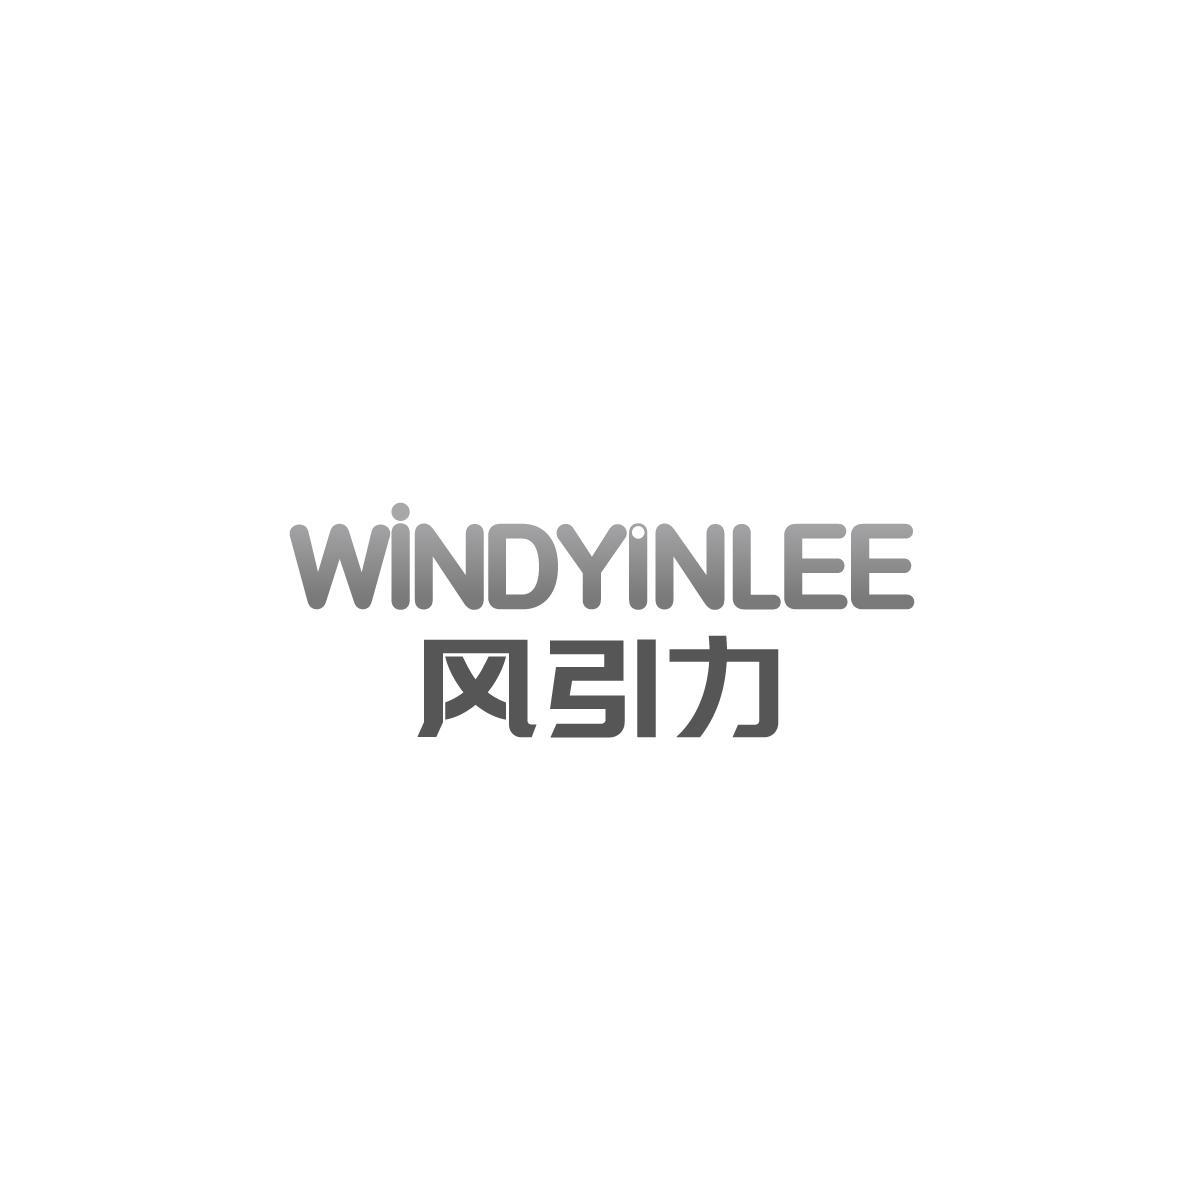 风引力 WINDYINLEE